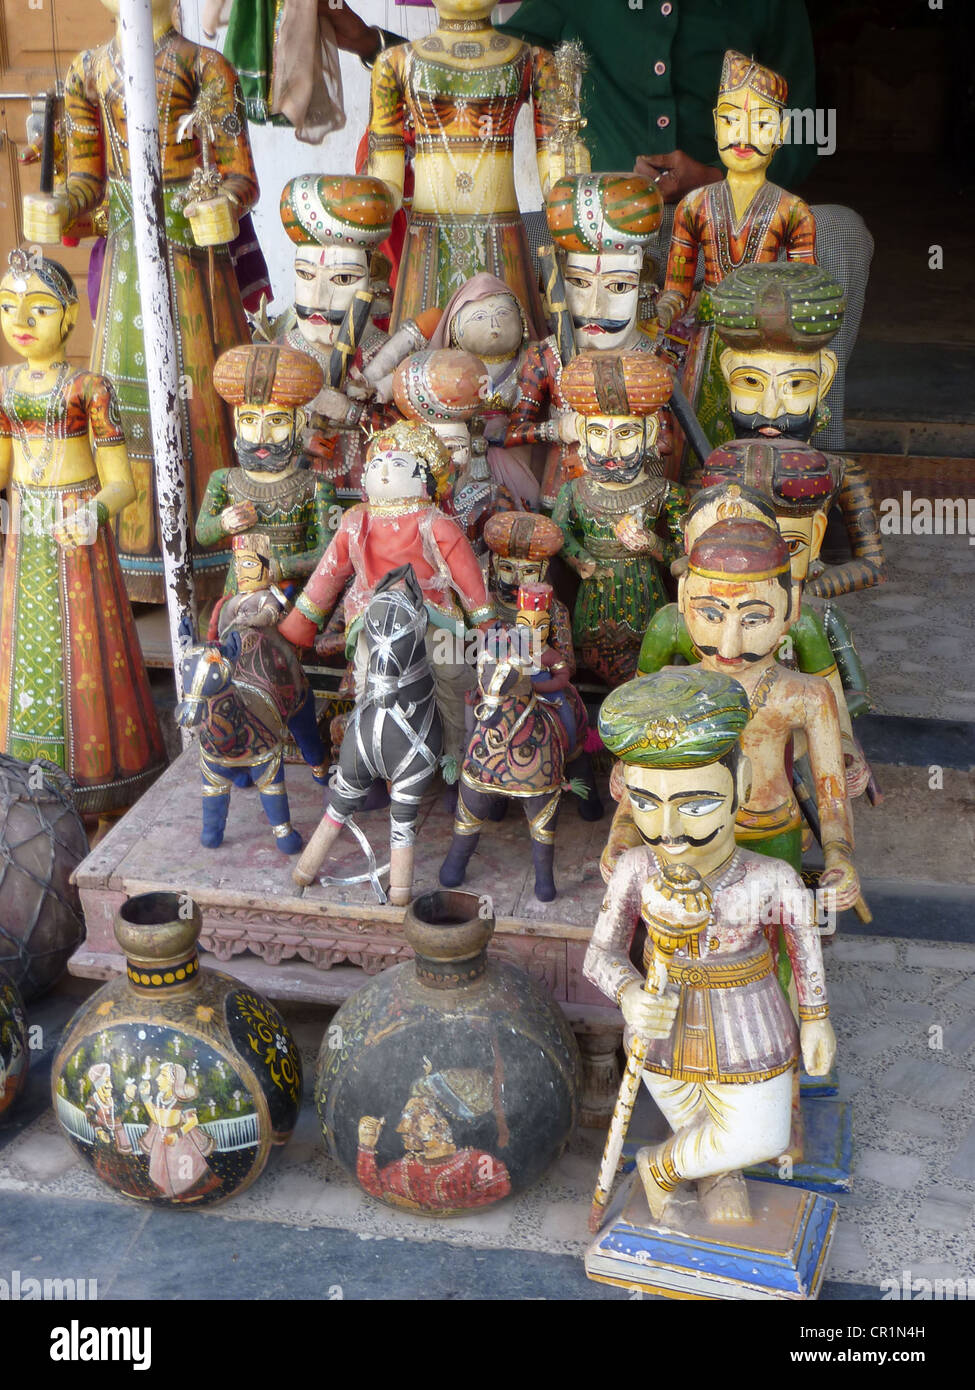 Marionnettes et marottes des princes Rajput à Udaipur, Rajasthan, Inde du marché, de l'Asie Banque D'Images